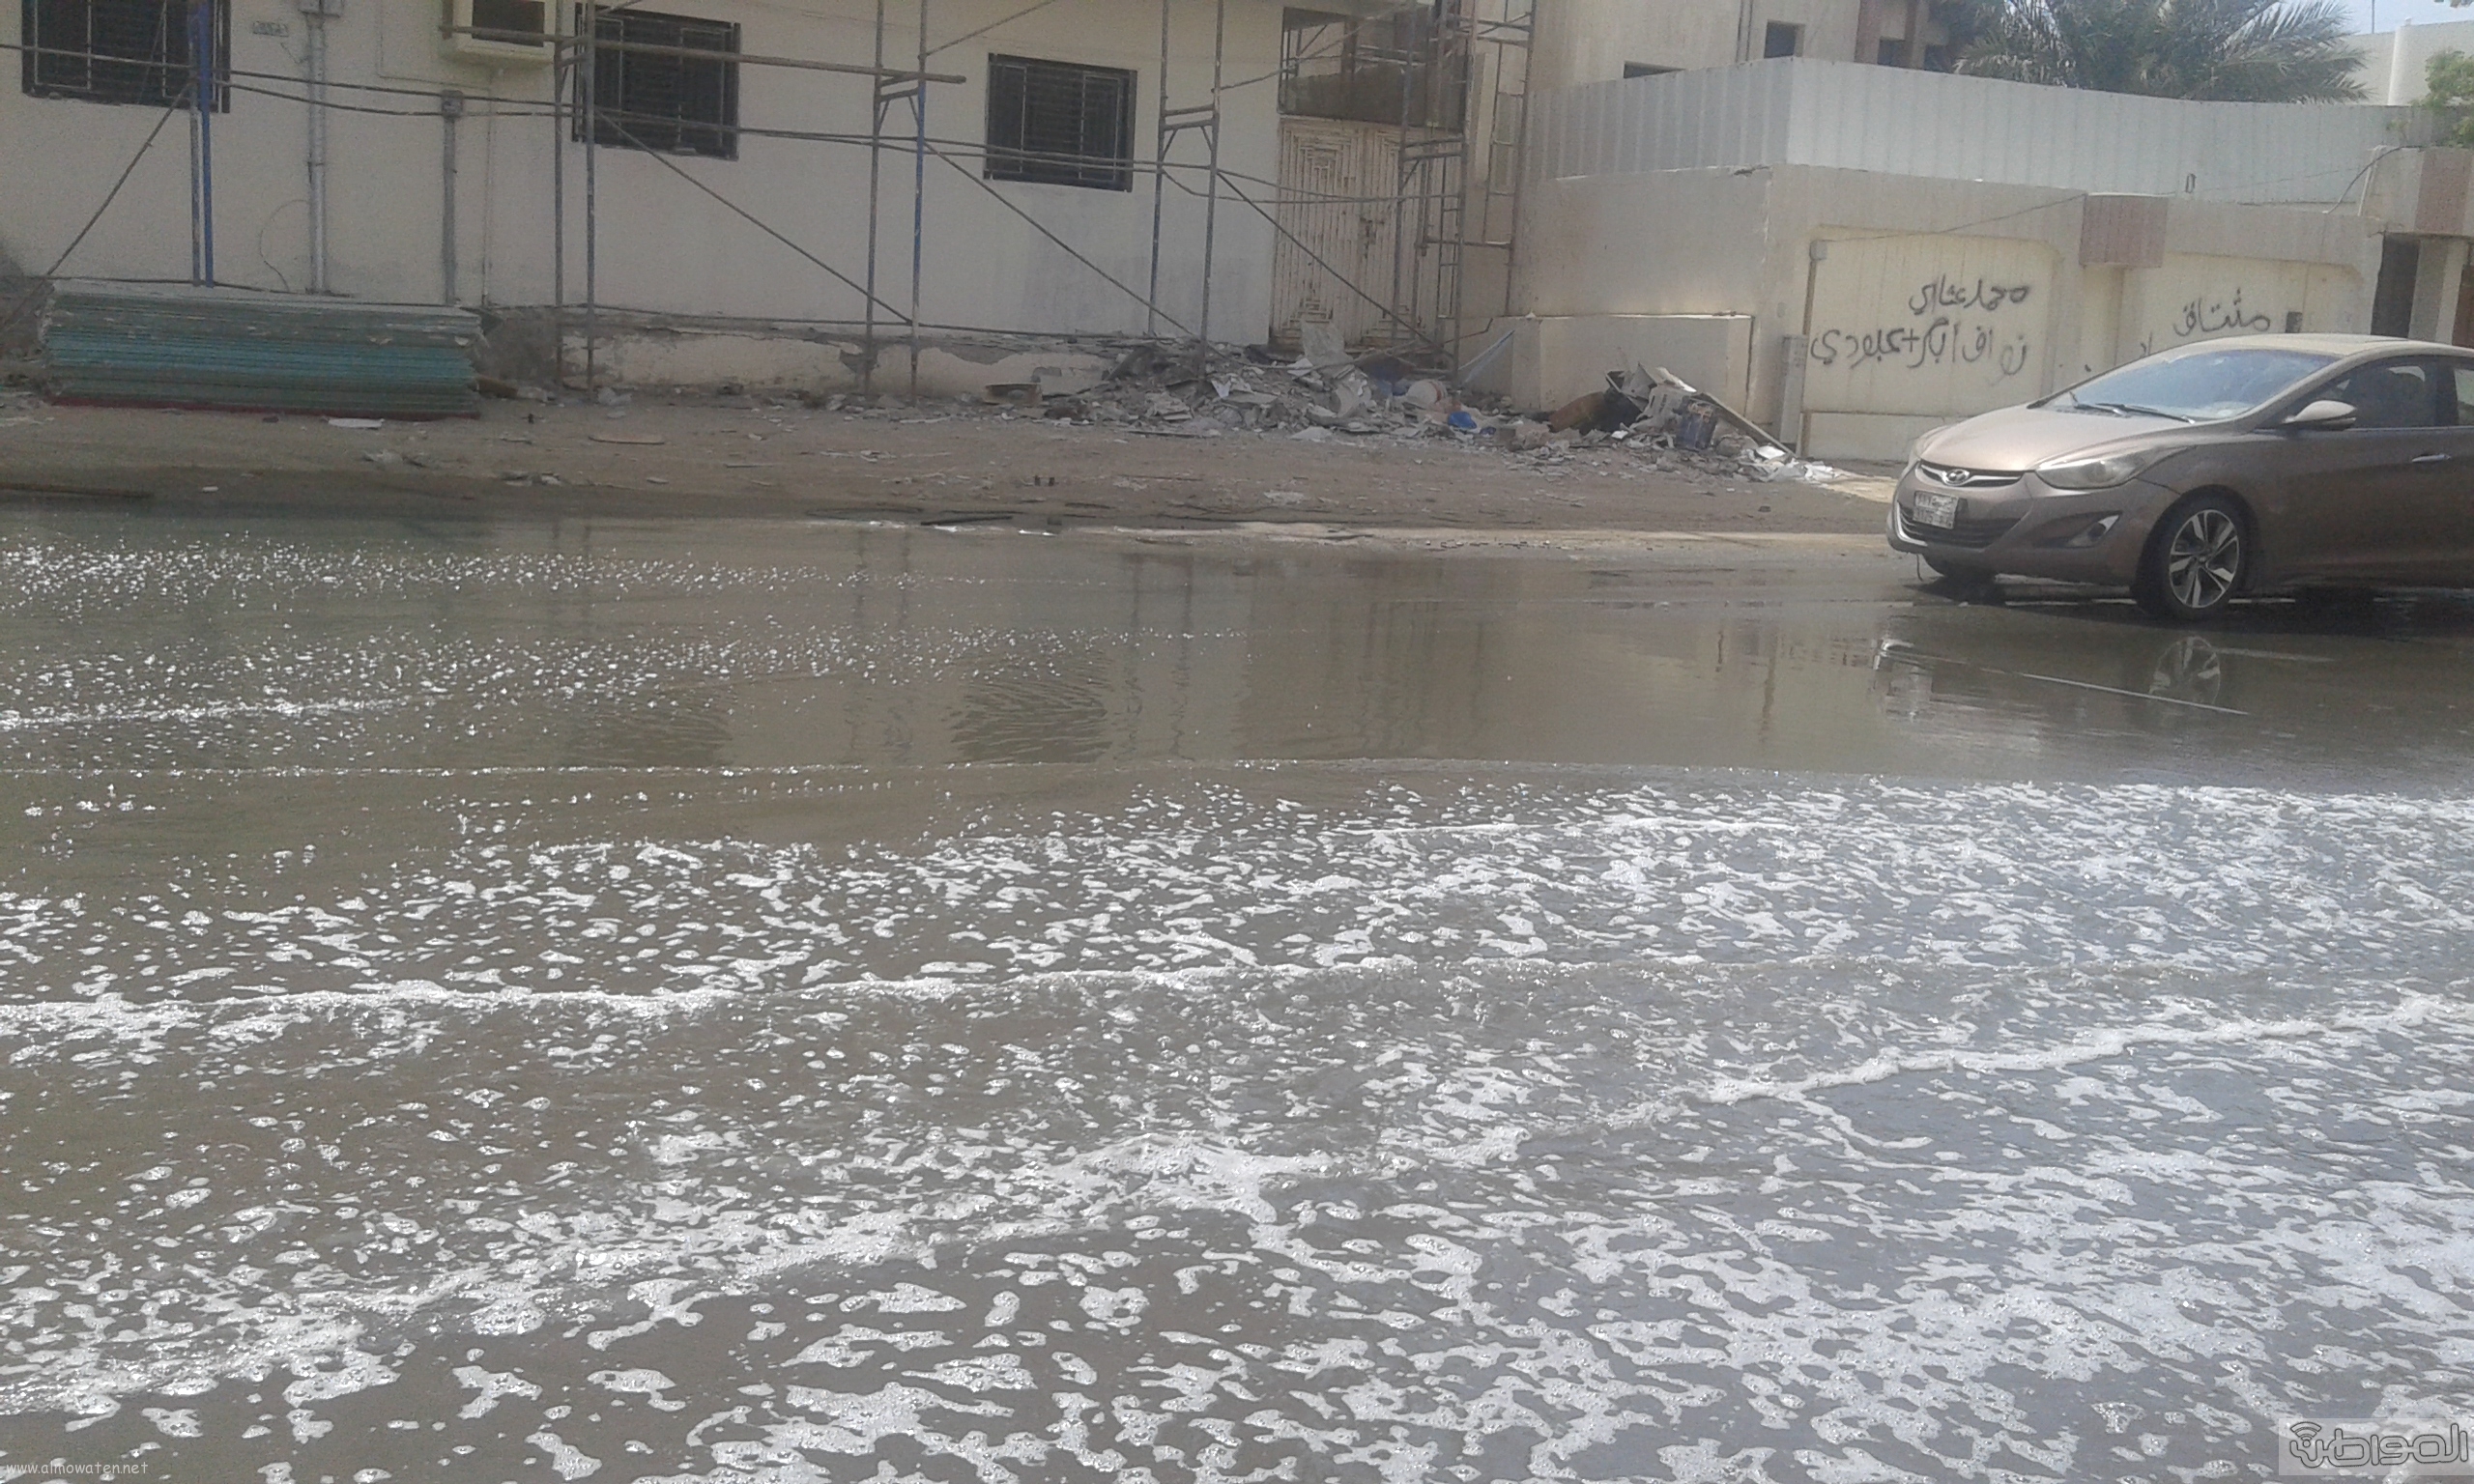 مياه الصرف الصحي تحاصر مسجد ومباني حكومية بروضة جازان (4)